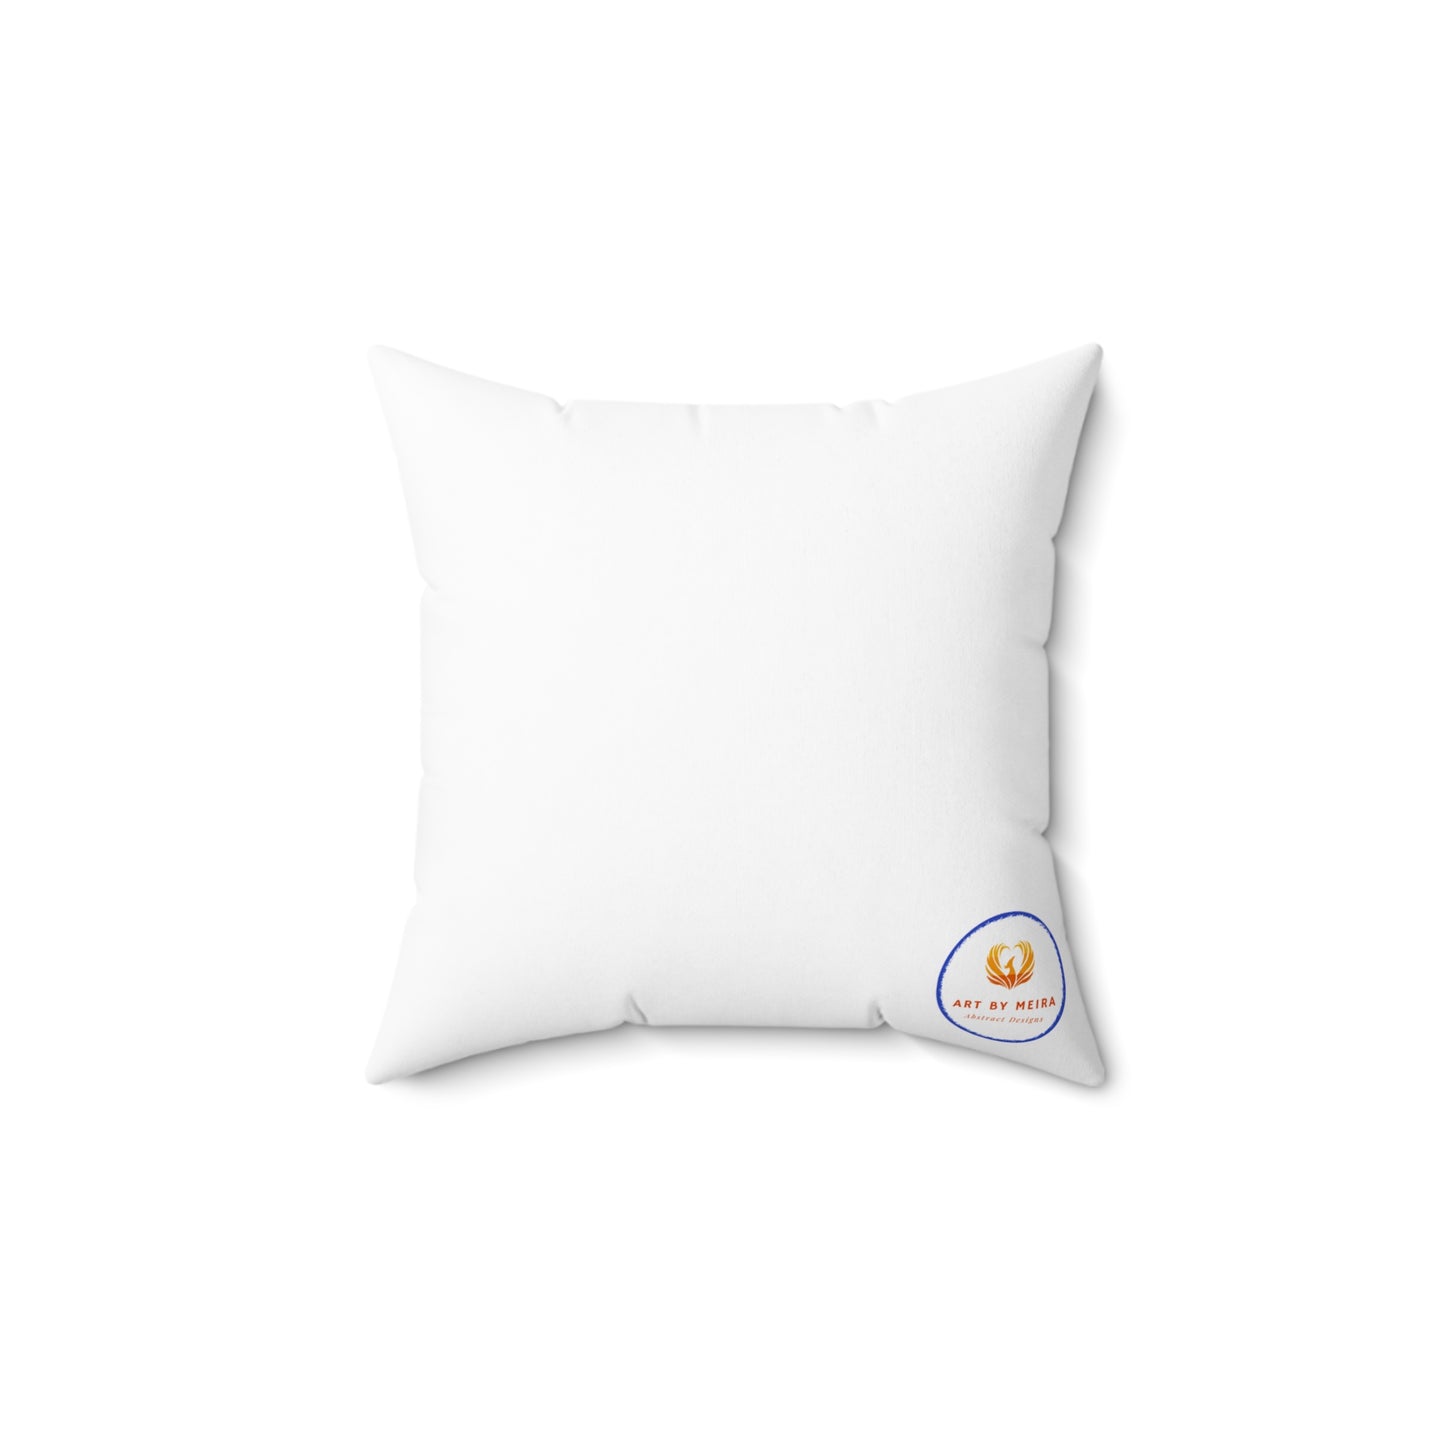 14x14 inch Pillow